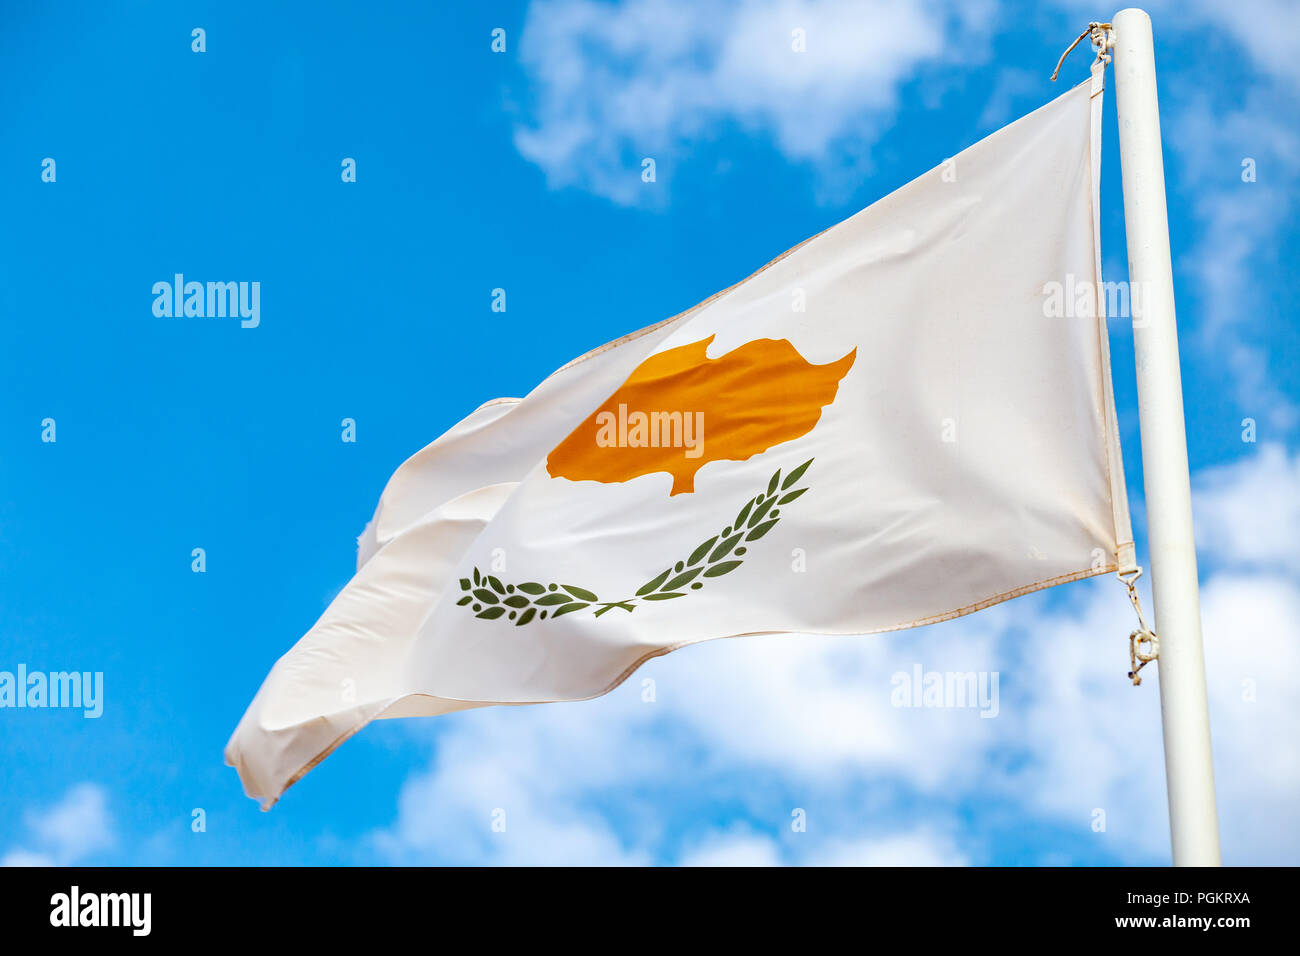 Brandissant le drapeau national de Chypre sur le vent sur fond de ciel bleu Banque D'Images